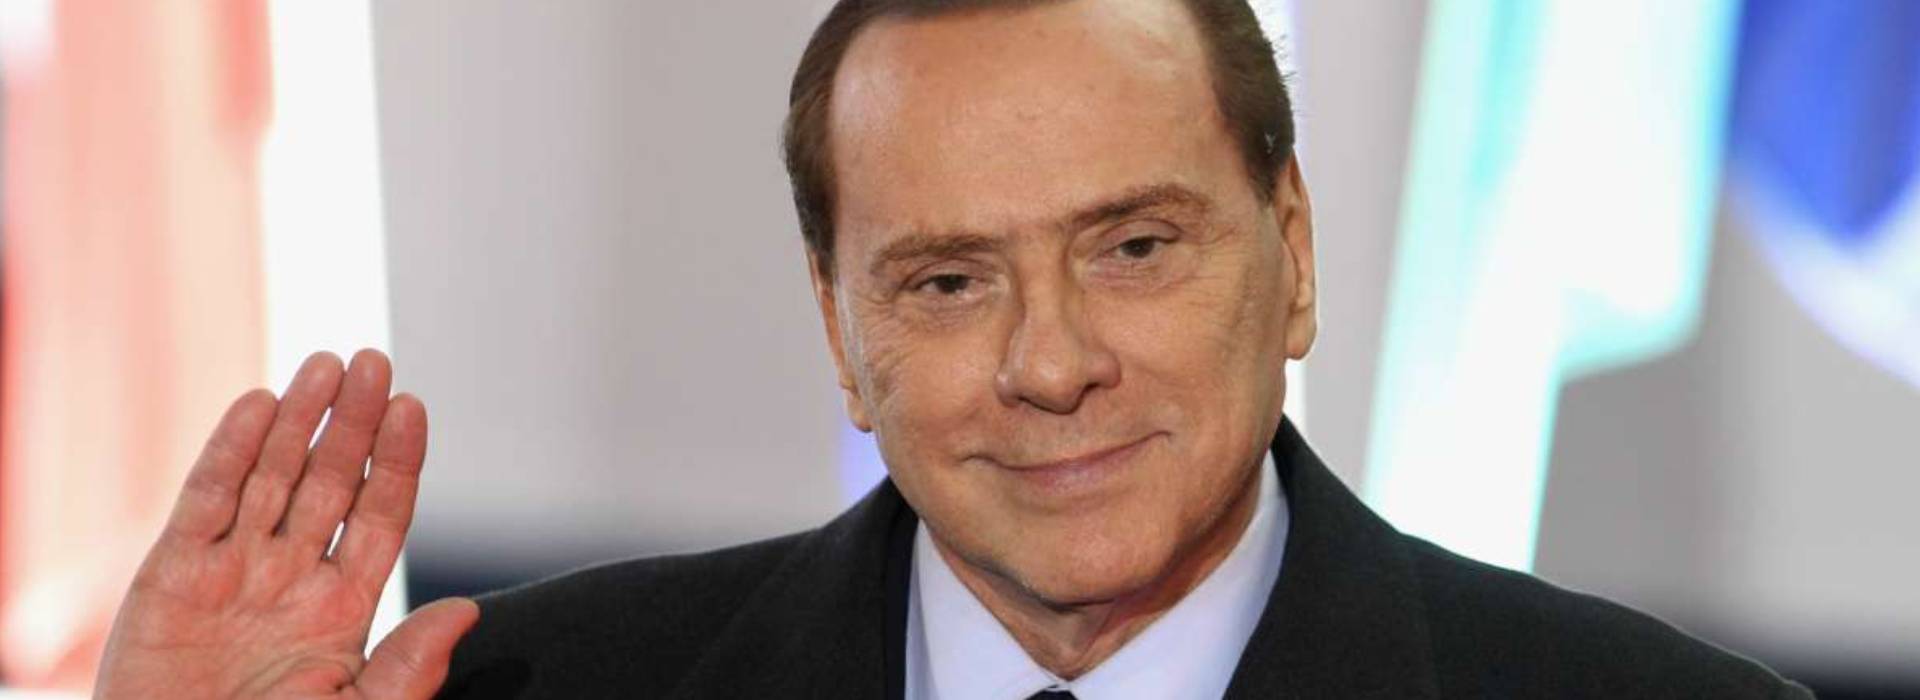 Le rivelazioni del giudice Franco: Berlusconi condannato ingiustamente da un plotone d'esecuzione